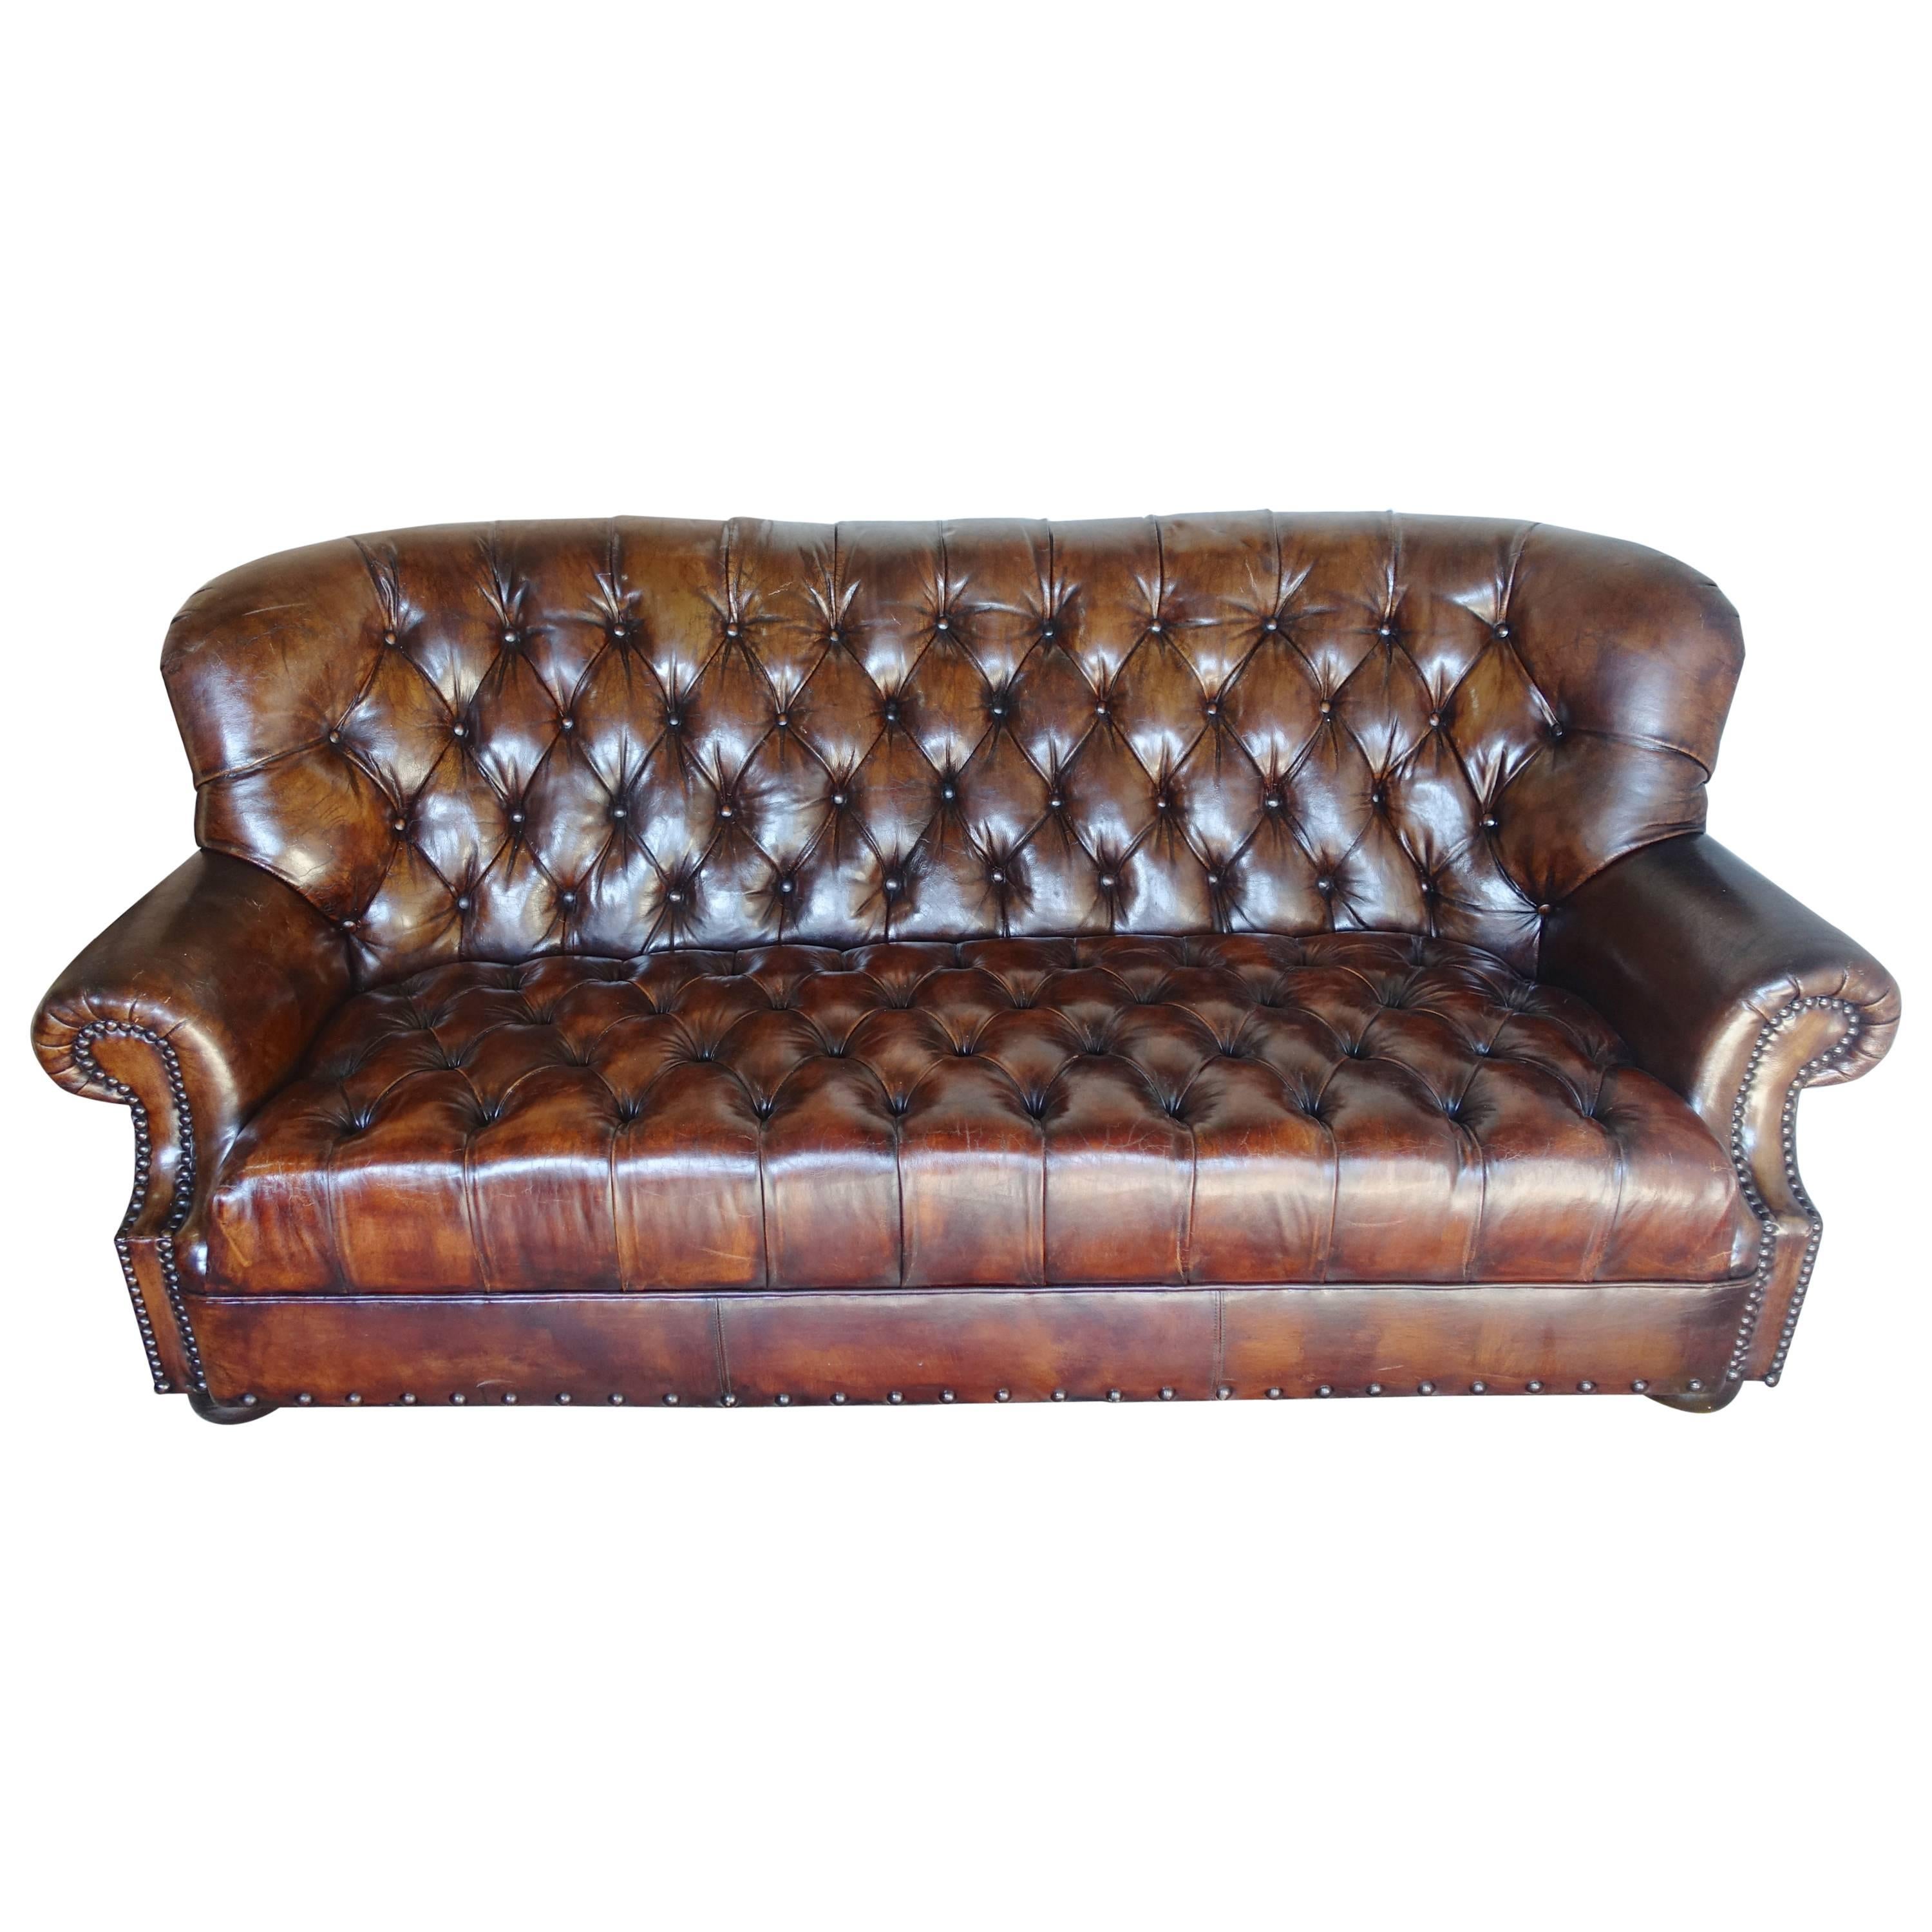 English Leather Tufted Sofa, circa 1930s